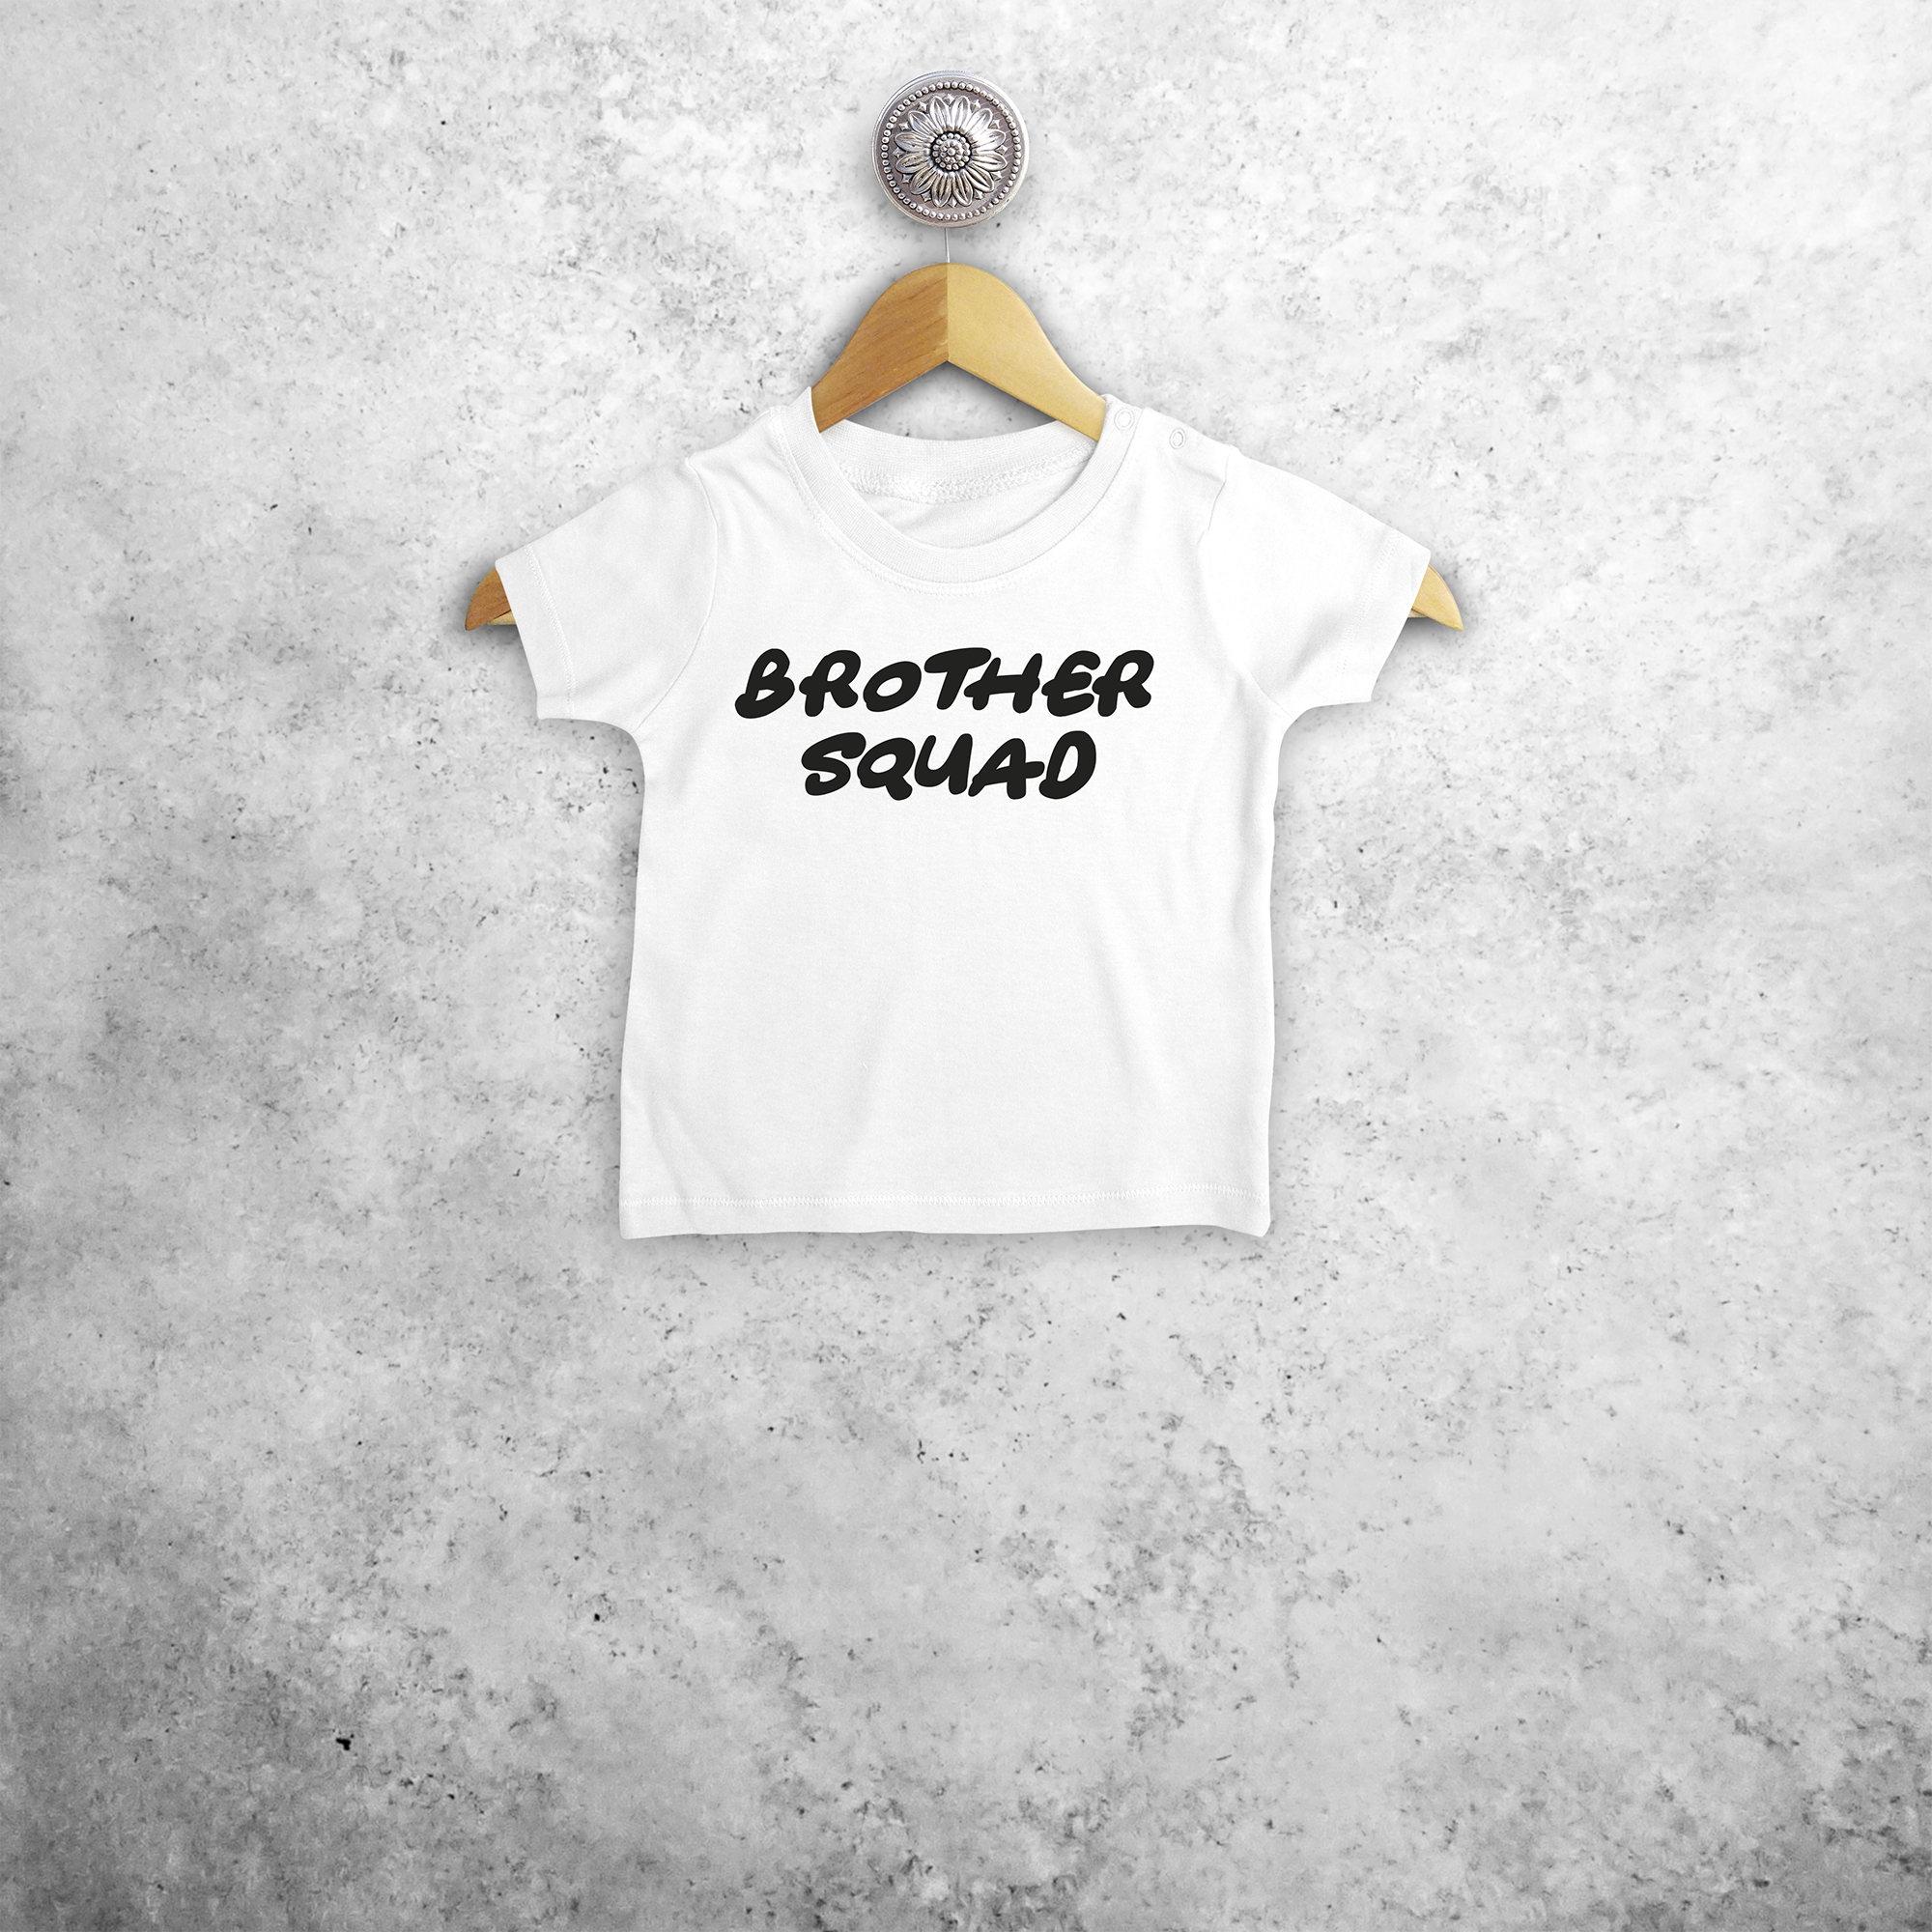 'Brother squad' baby shortsleeve shirt